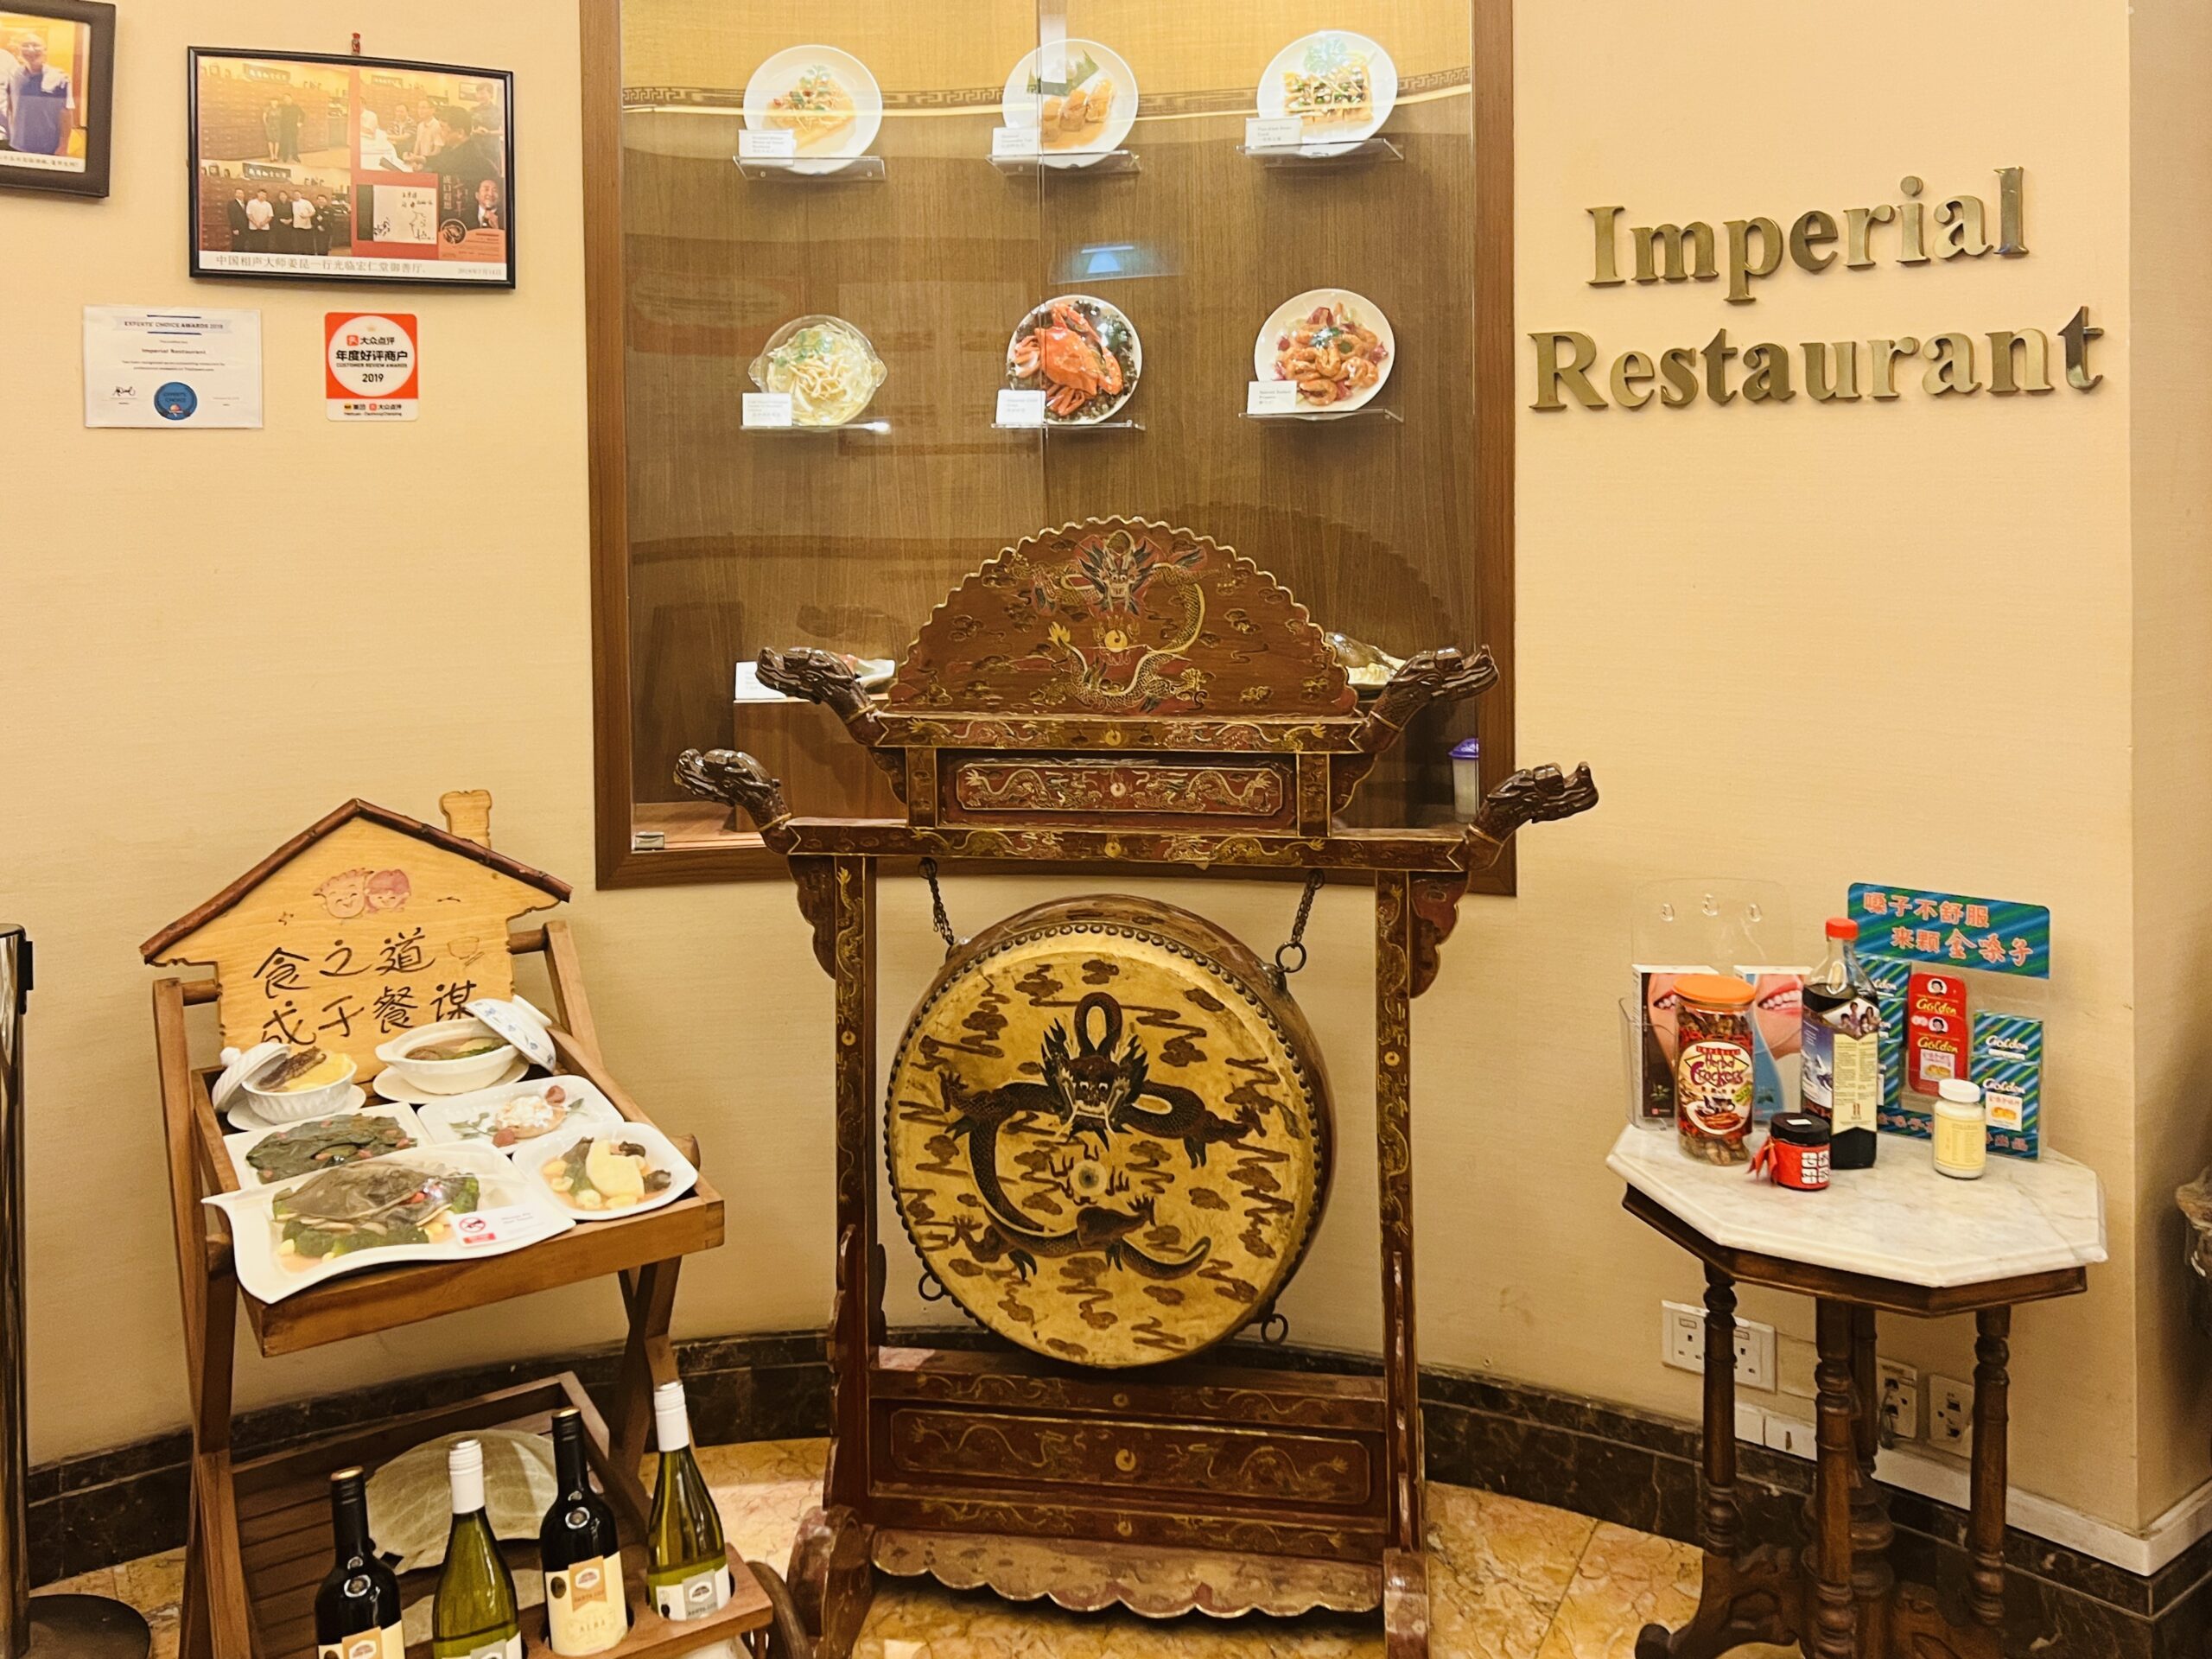 Imperial Restaurant - Decor